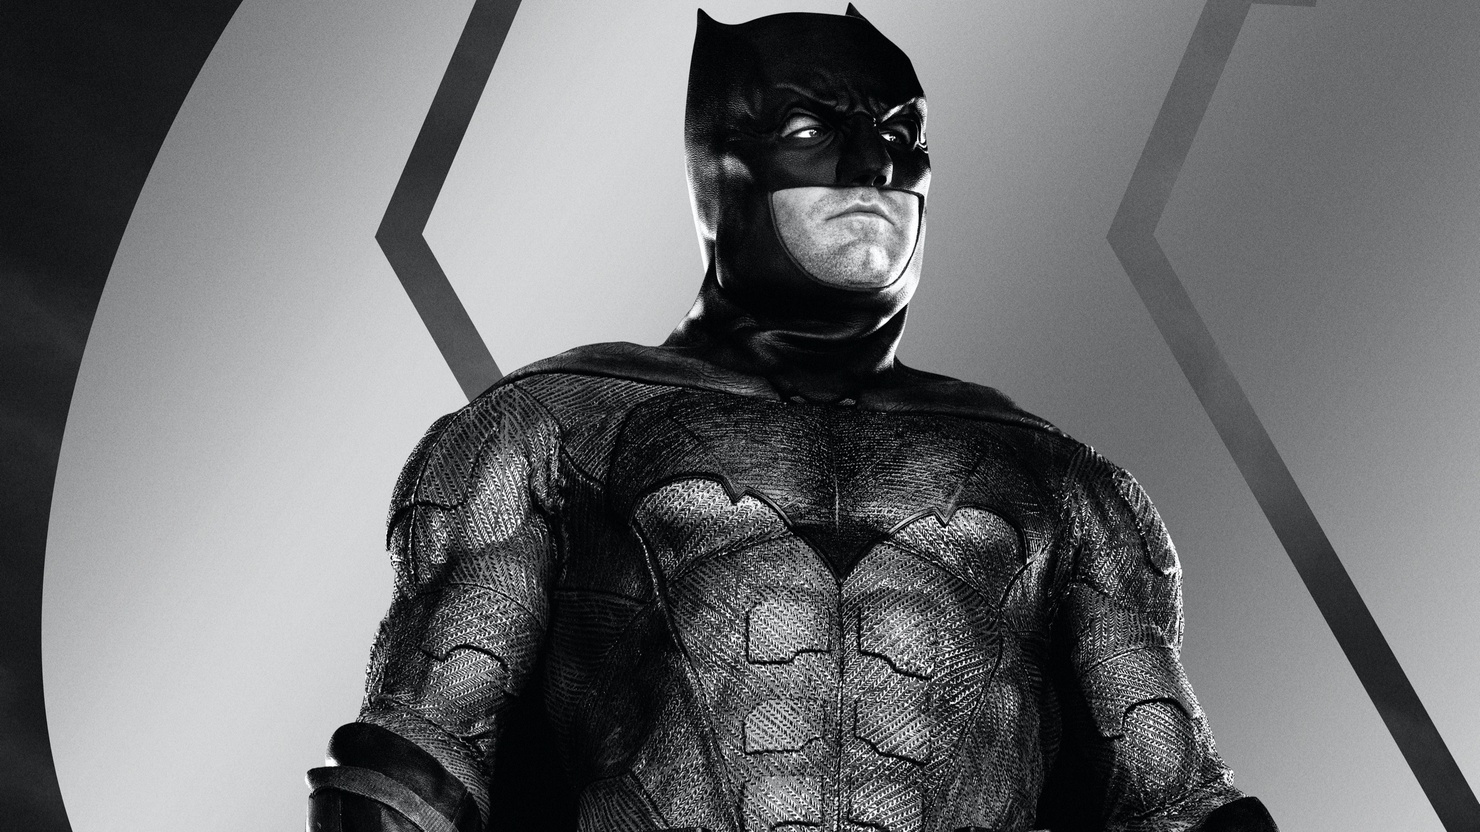 "Лига справедливости" Зака Снайдера: свежий тизер с брутальным Бэтменом и дата выхода в России